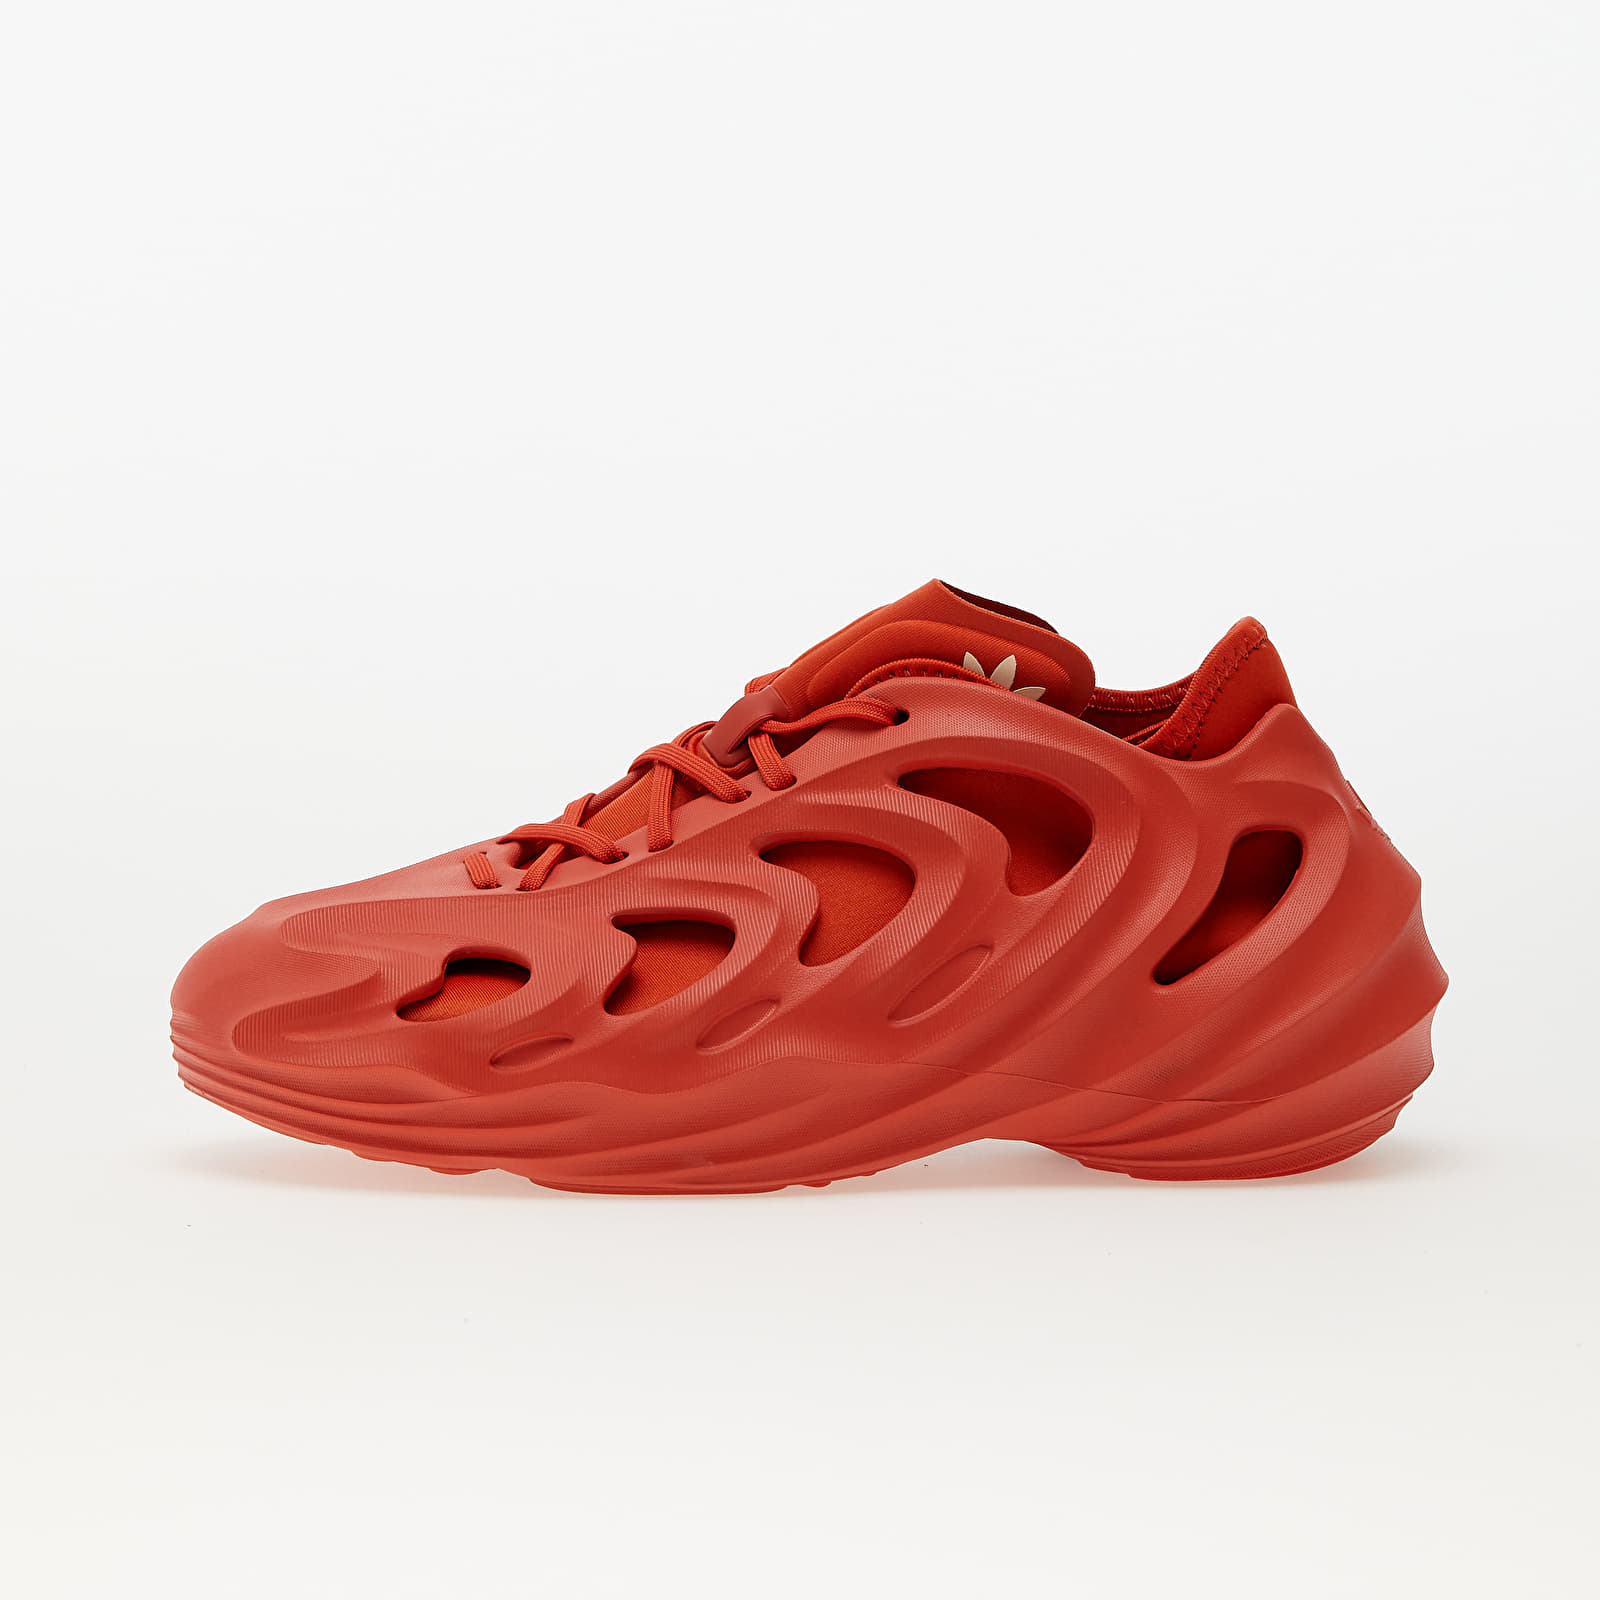 Turnschuhe und Schuhe für Männer adidas Originals Adifom Q Preloved Red/ Preloved Red/ Shadow Red